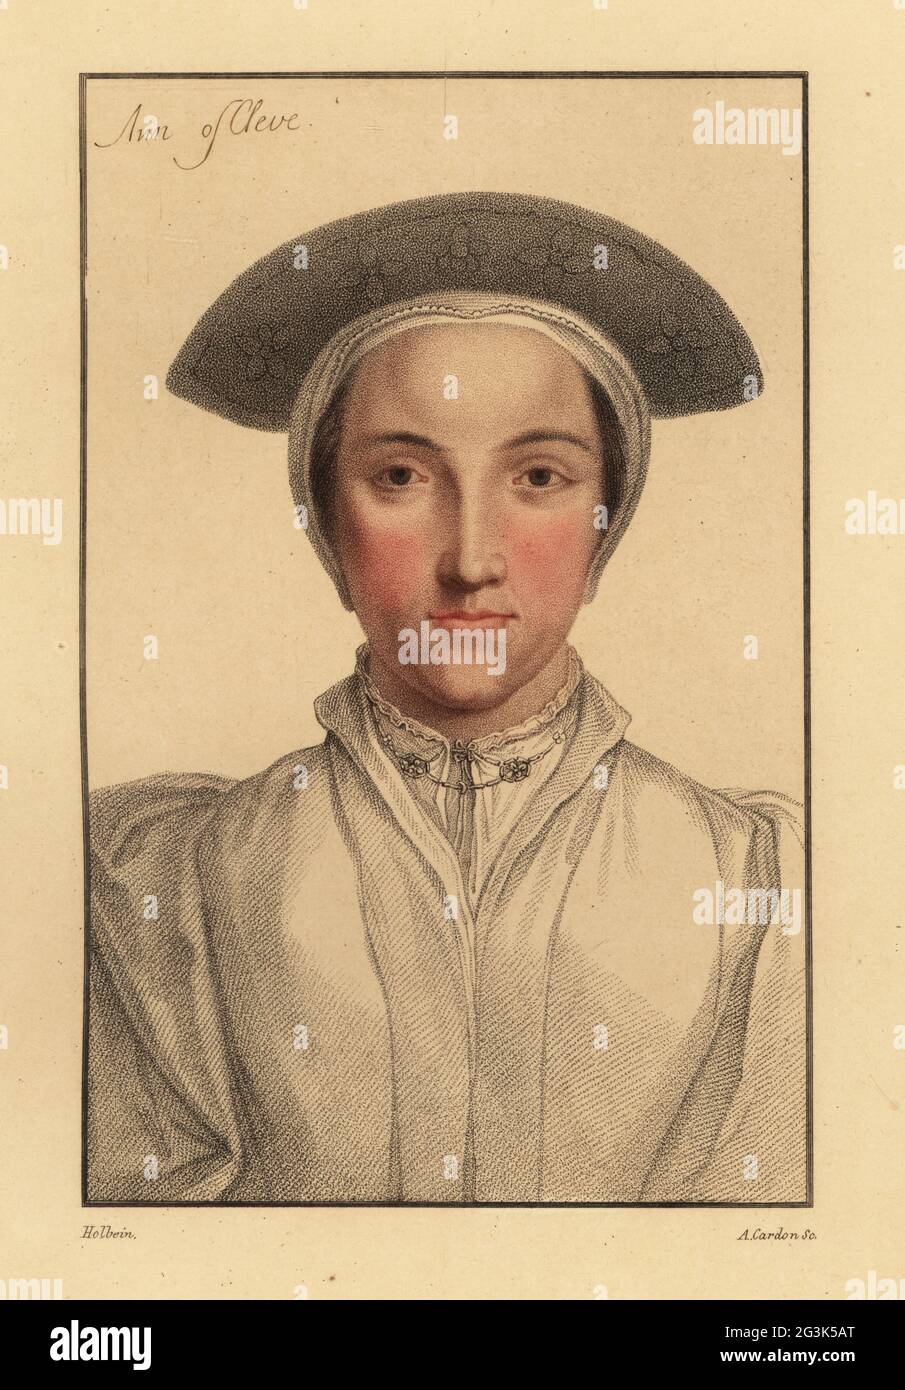 Anne de Cleves, 4e épouse du roi Henri VIII, 1515-1557, reine d'Angleterre. Parfois identifiée comme sa sœur Amalia de Cleves, 1517-1586.. Ann de Cleve. Gravure à l'effigie d'Anthony Cardon sur une plaque de coperplate de couleur main après un portrait de Hans Holbein le plus jeune à partir d'imitations de dessins originaux de Hans Holbein, John Chamberlaine, Londres, 1812. Banque D'Images